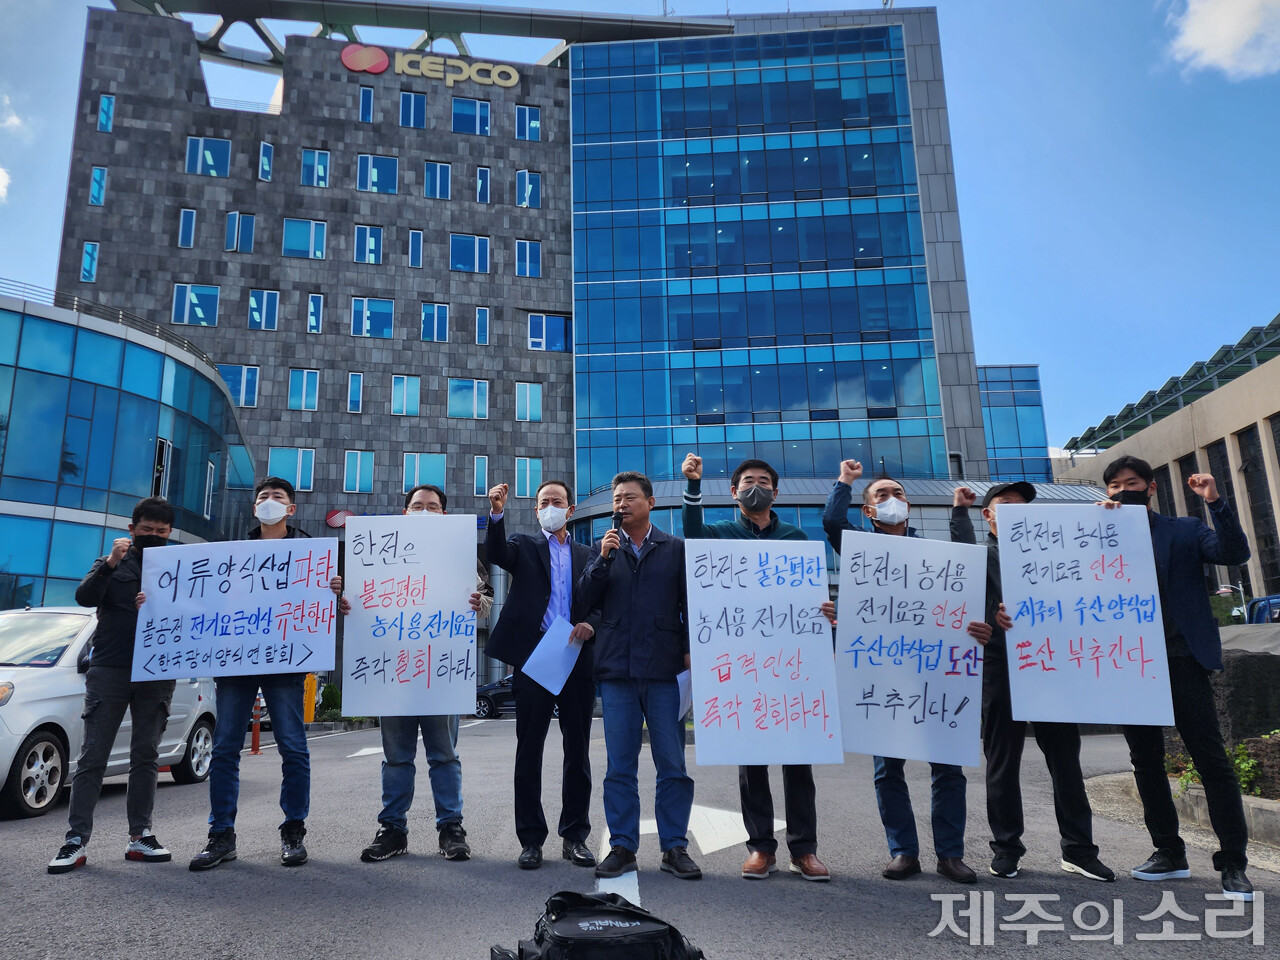 제주 수산양식단체들은 12일 오전 10시 한국전력 제주본부 앞에서 기자회견을 열고 이번 달부터 적용되는 농사용 전기요금 인상을 철회하라고 촉구했다. ⓒ제주의소리